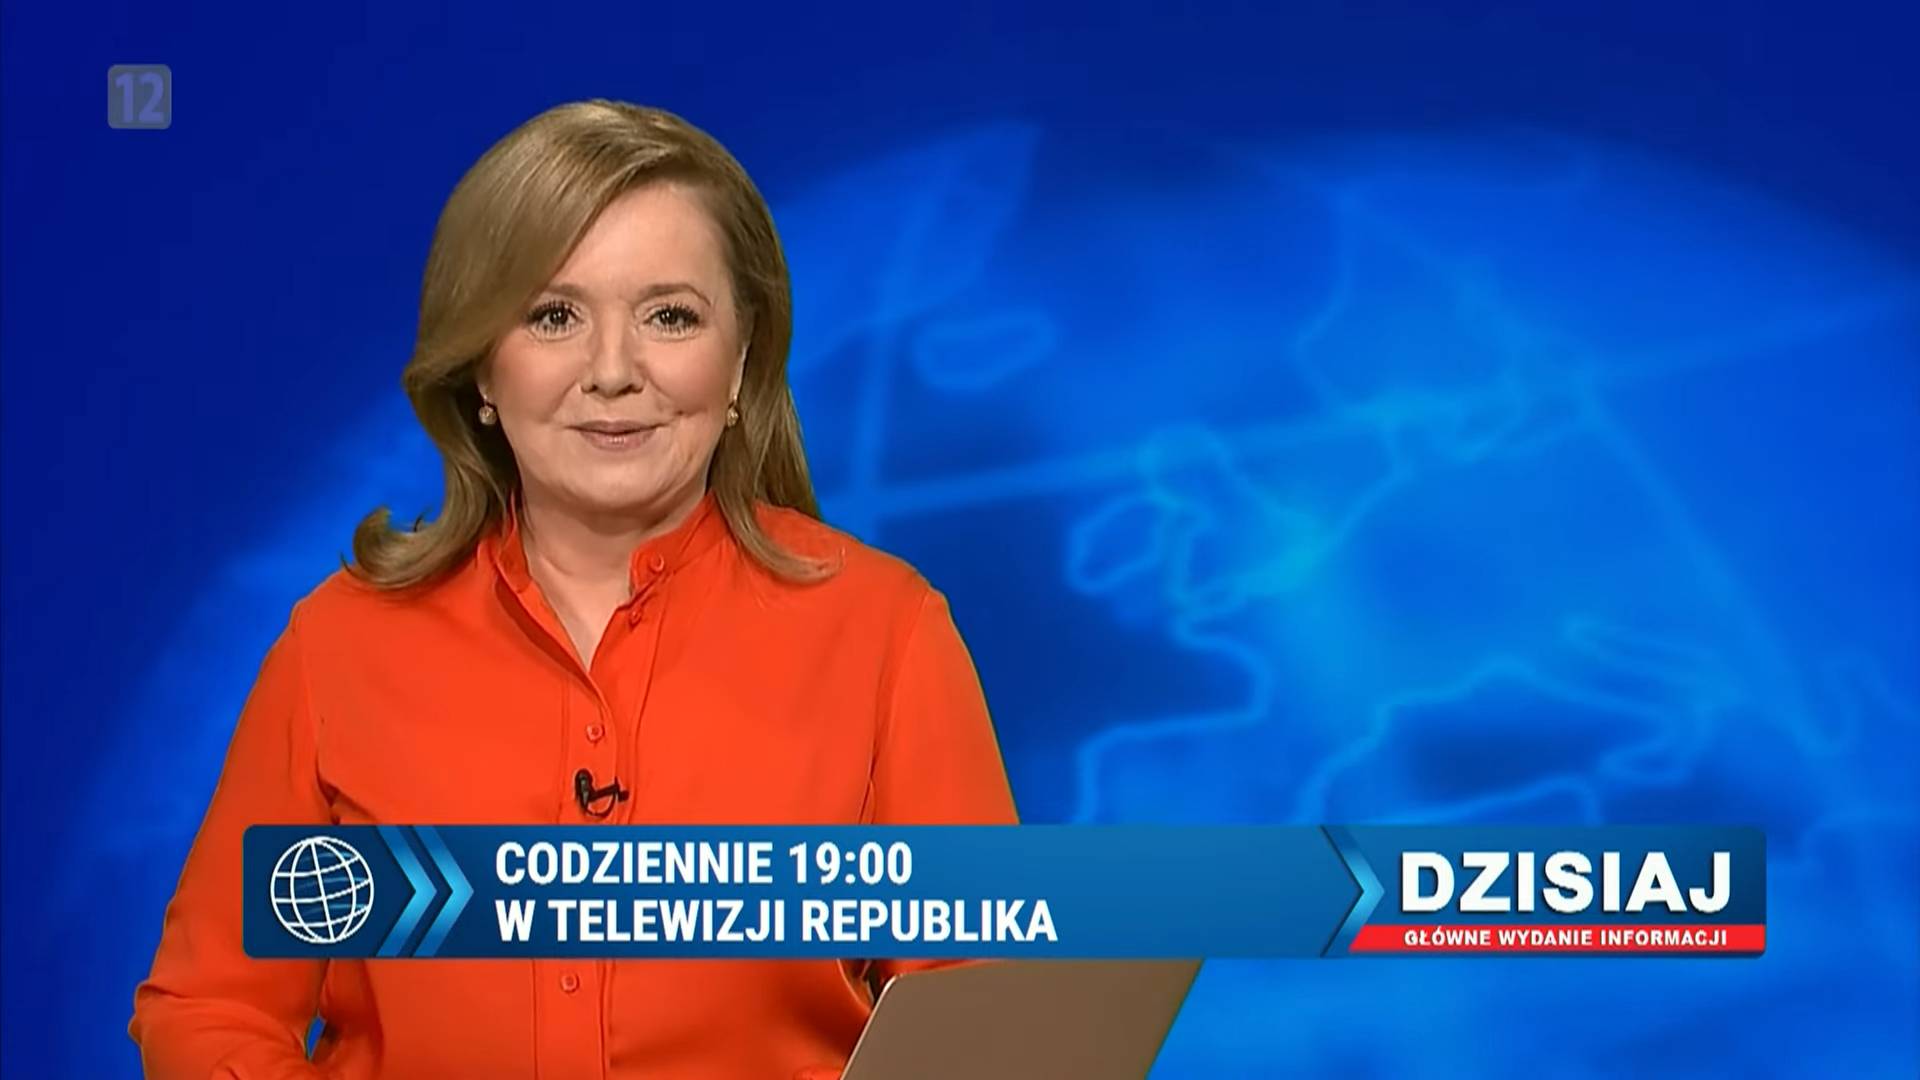 na zdjęciu Danuta Holecka, prowadząca informacji w Telewizji Republika. Ma na sobie pomarańczową koszulę.